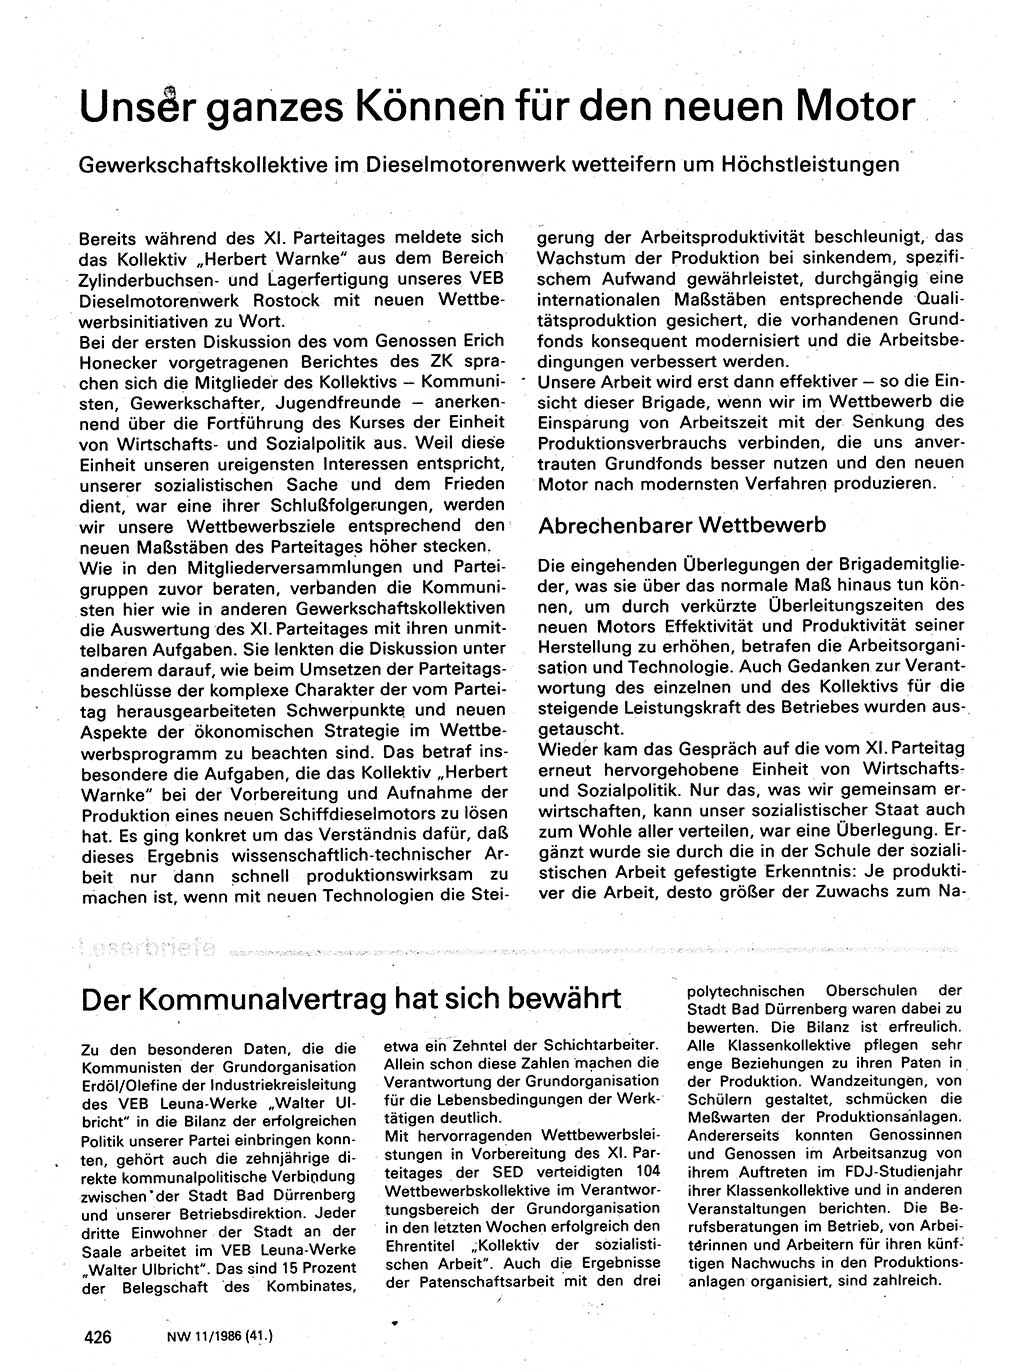 Neuer Weg (NW), Organ des Zentralkomitees (ZK) der SED (Sozialistische Einheitspartei Deutschlands) für Fragen des Parteilebens, 41. Jahrgang [Deutsche Demokratische Republik (DDR)] 1986, Seite 426 (NW ZK SED DDR 1986, S. 426)